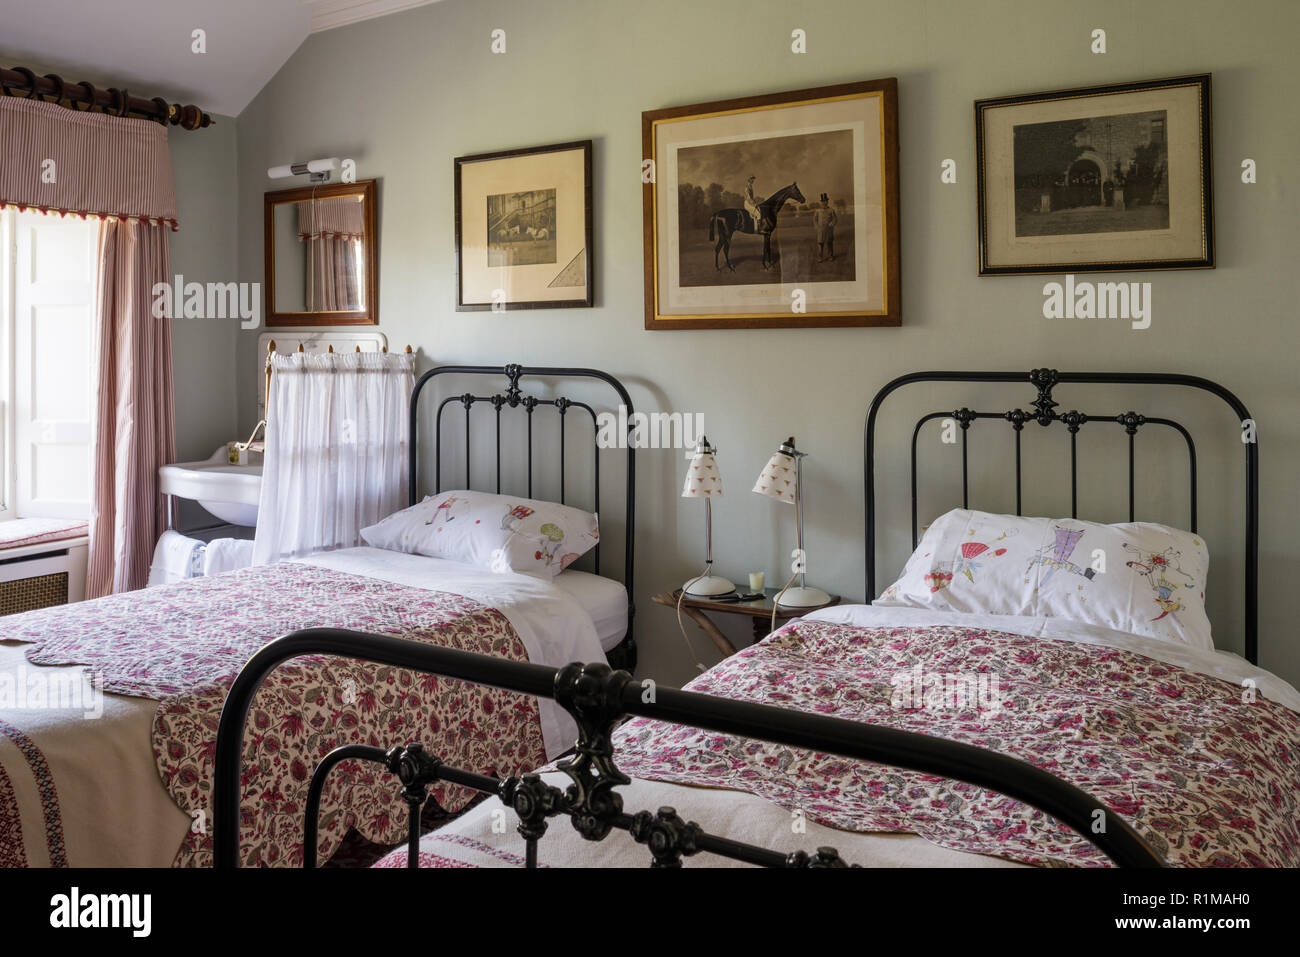 Des lits simples dans la chambre à coucher de style édouardien Banque D'Images